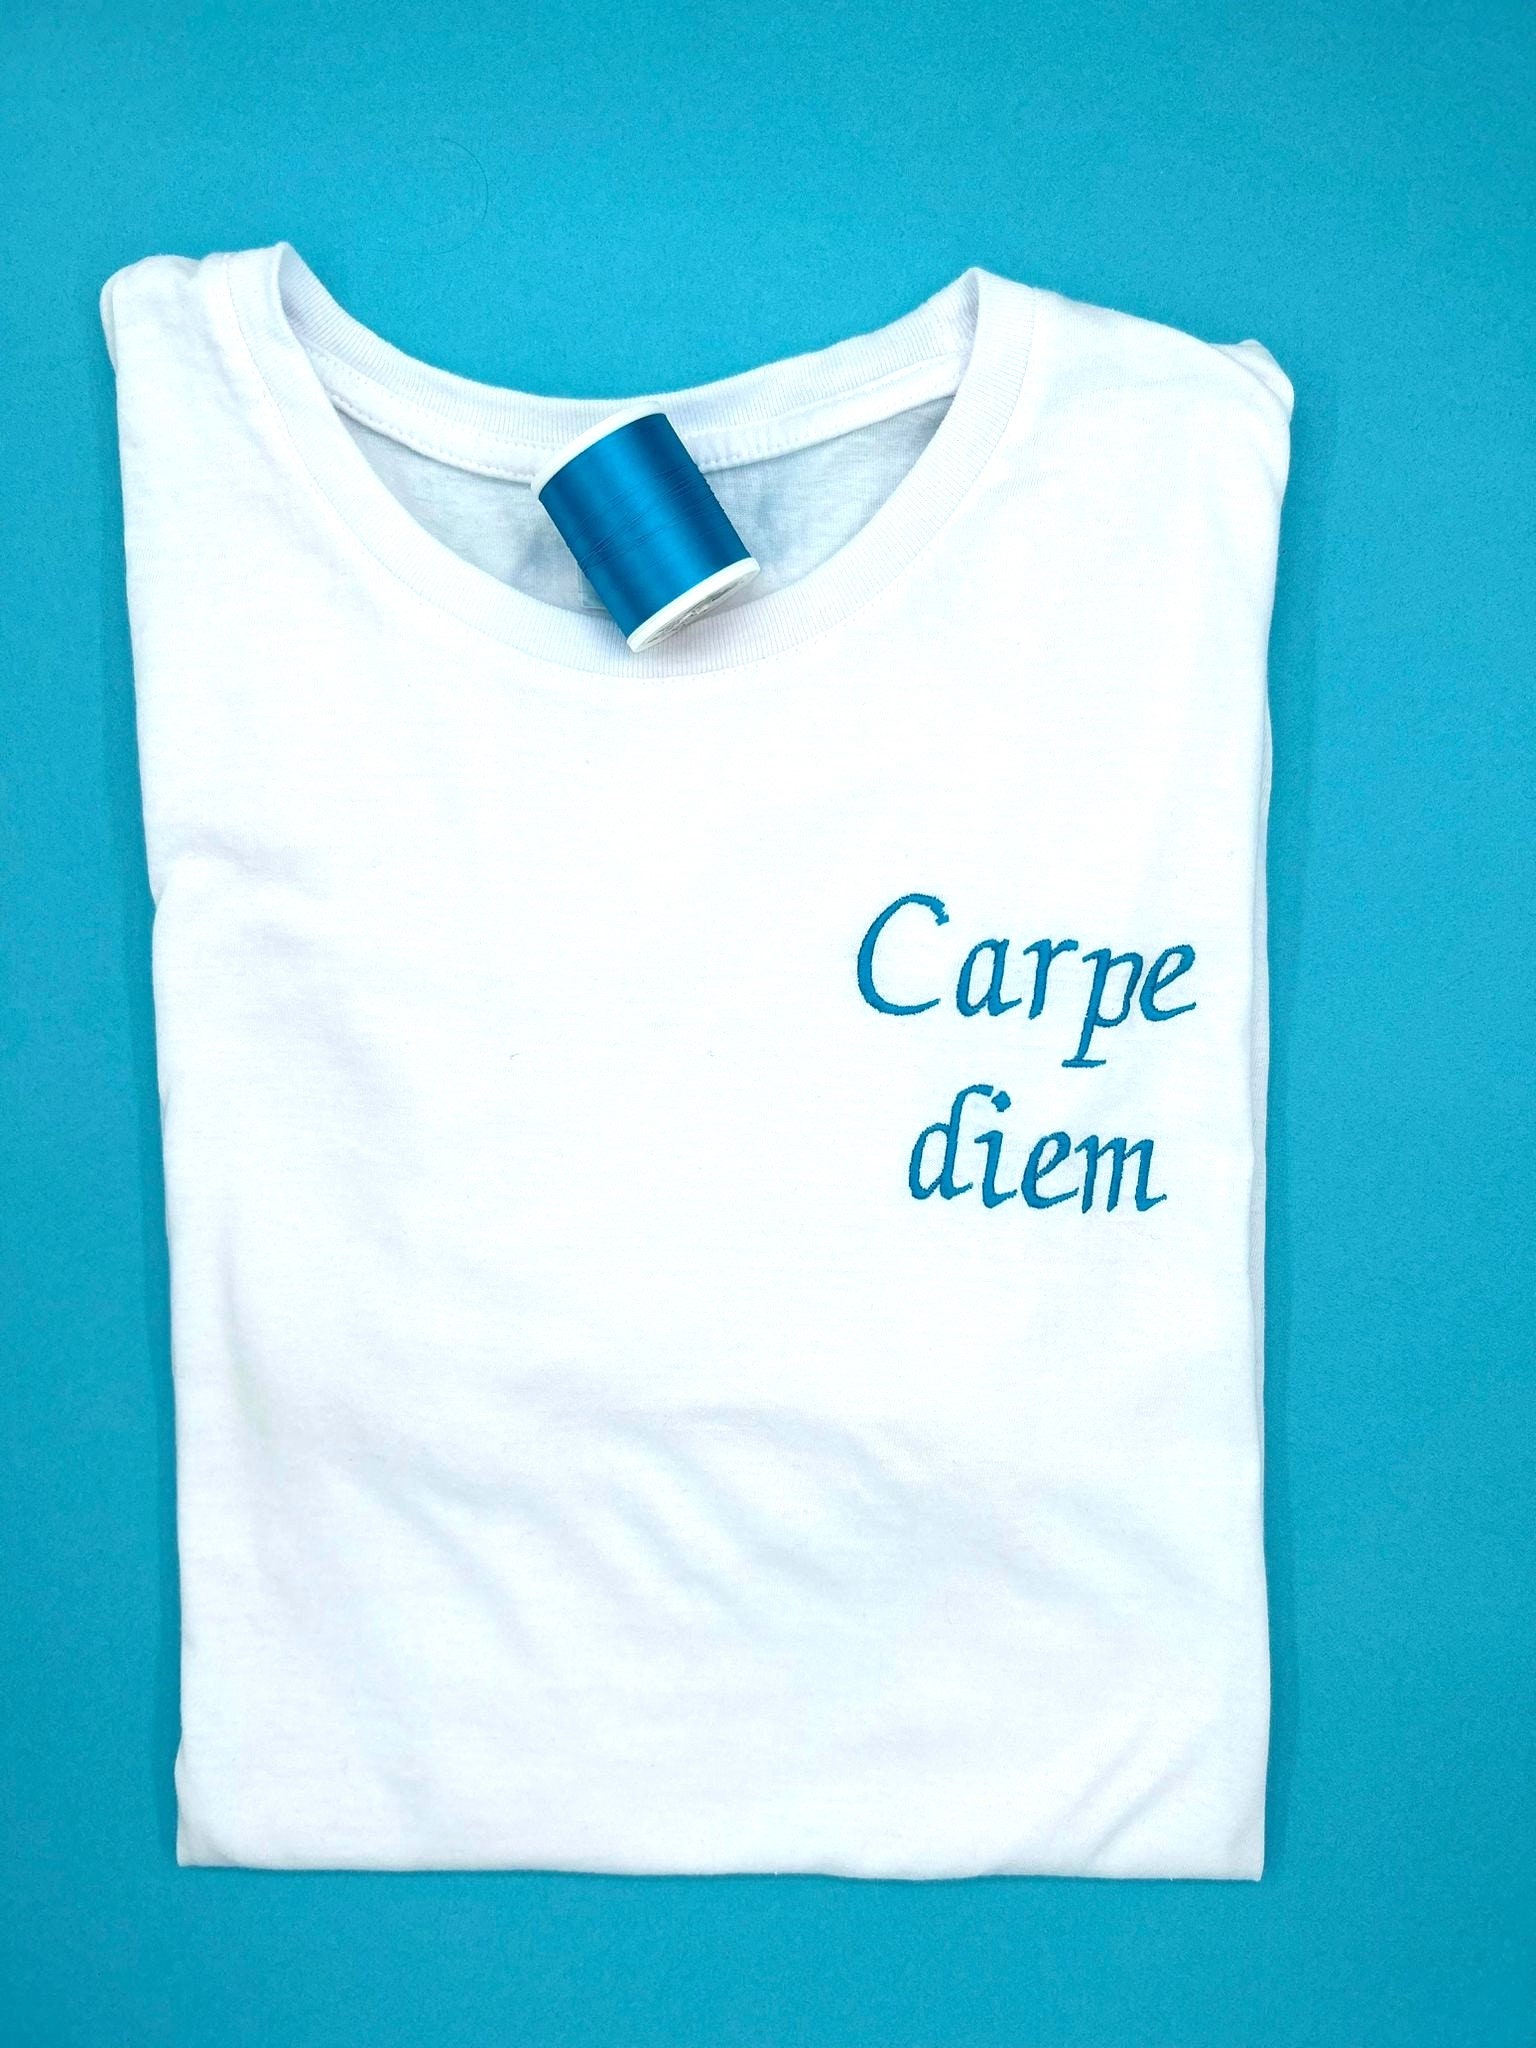 Latin: carpe Diem, Carpe Noctem, Carpe Omnia Short Sleeve Unisex T